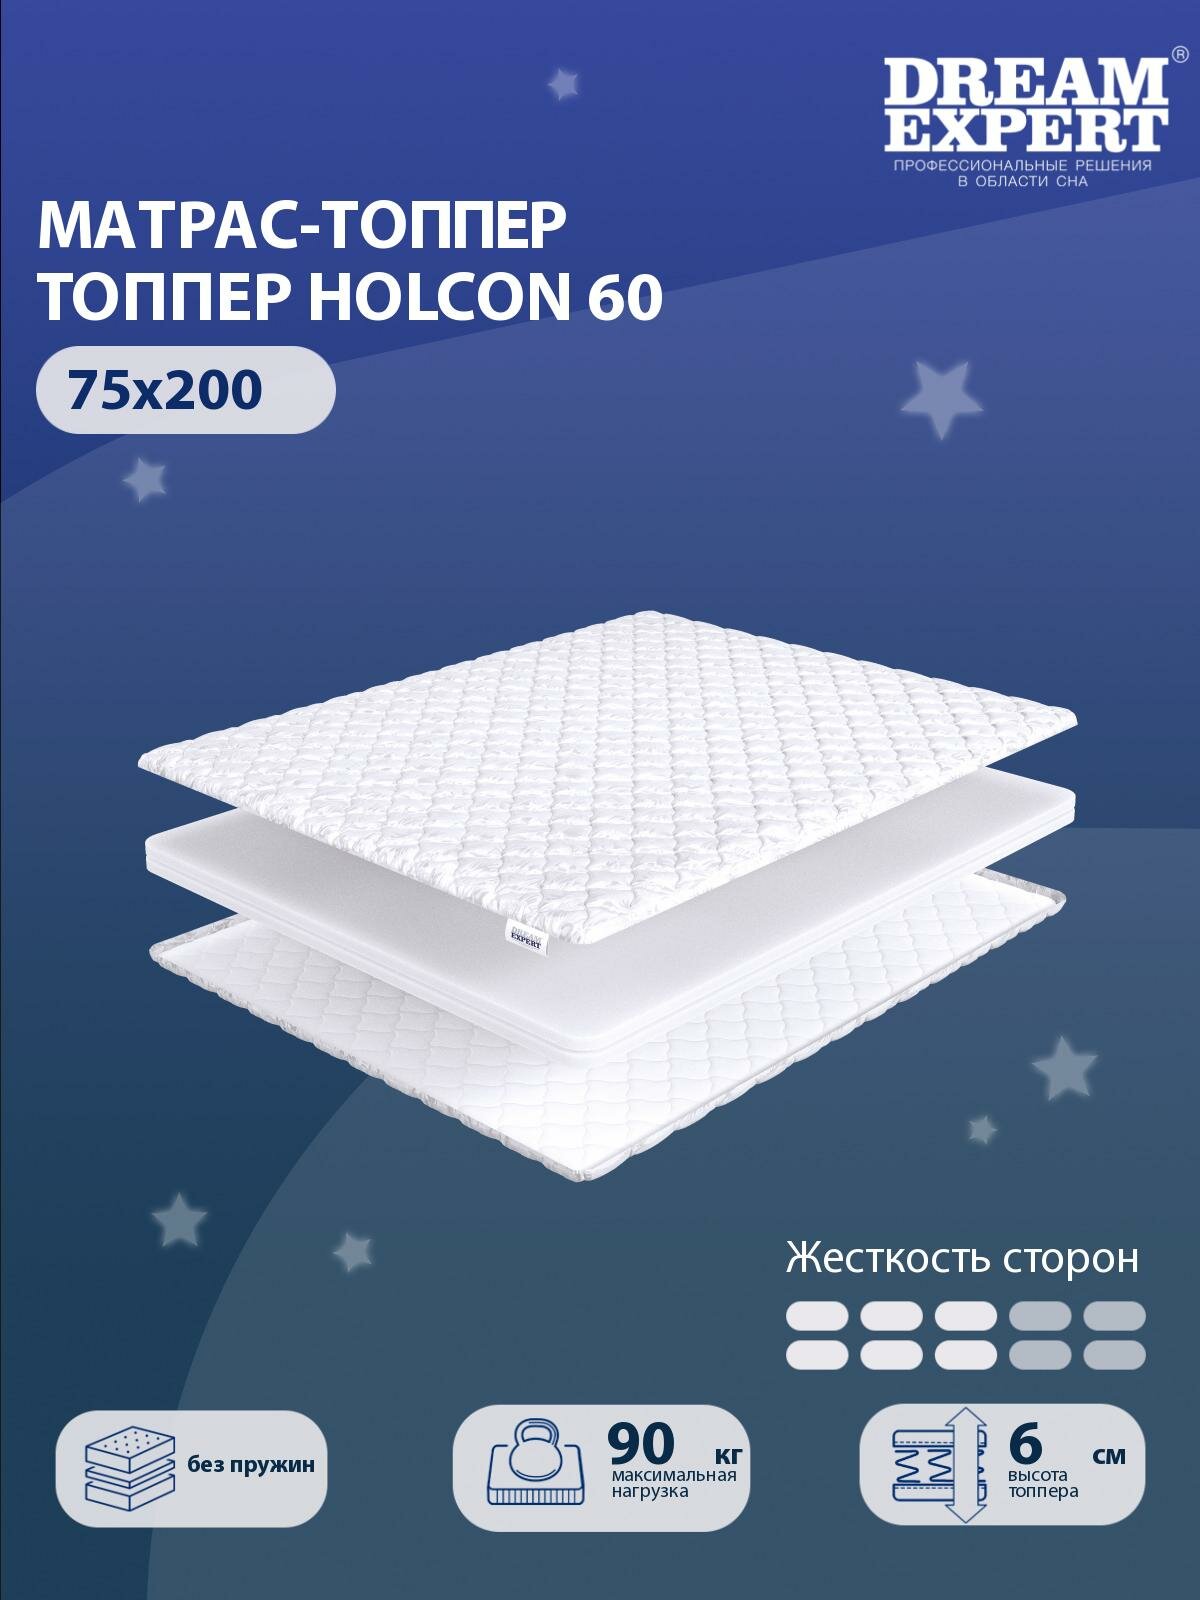 Матрас-топпер, Топпер-наматрасник DreamExpert Holcon 60 тонкий матрас, на резинке, Беспружинный, хлопковый, на кровать 75x200